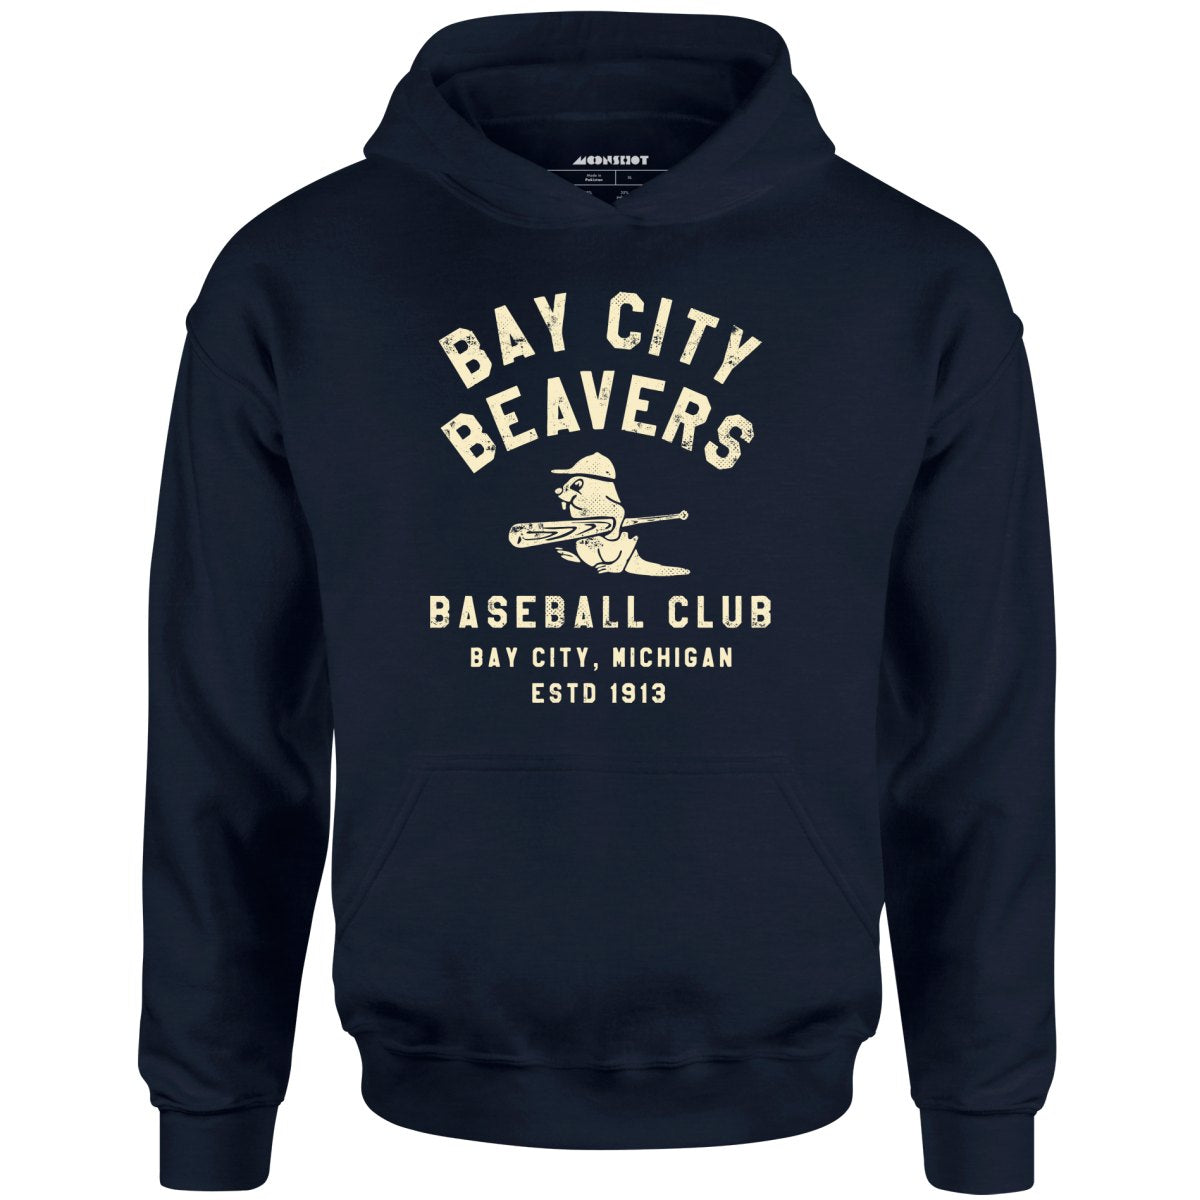 Bay City Beavers - Michigan - Vintage Defunct Baseball Teams - Unisex Hoodie